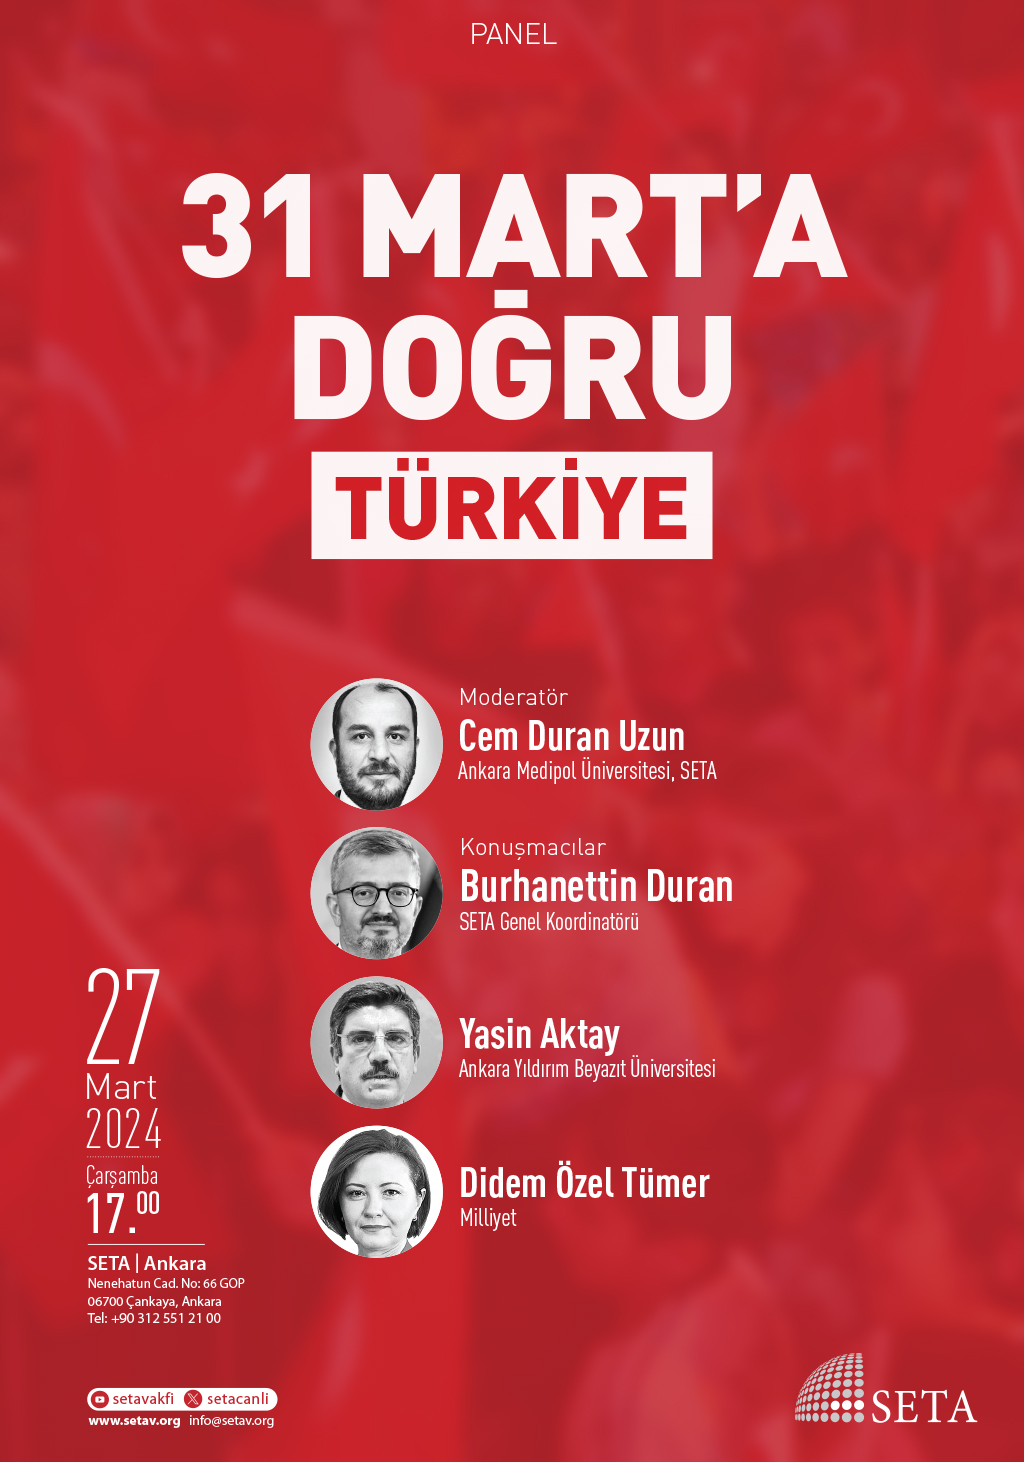 Panel 31 Mart'a Doğru Türkiye